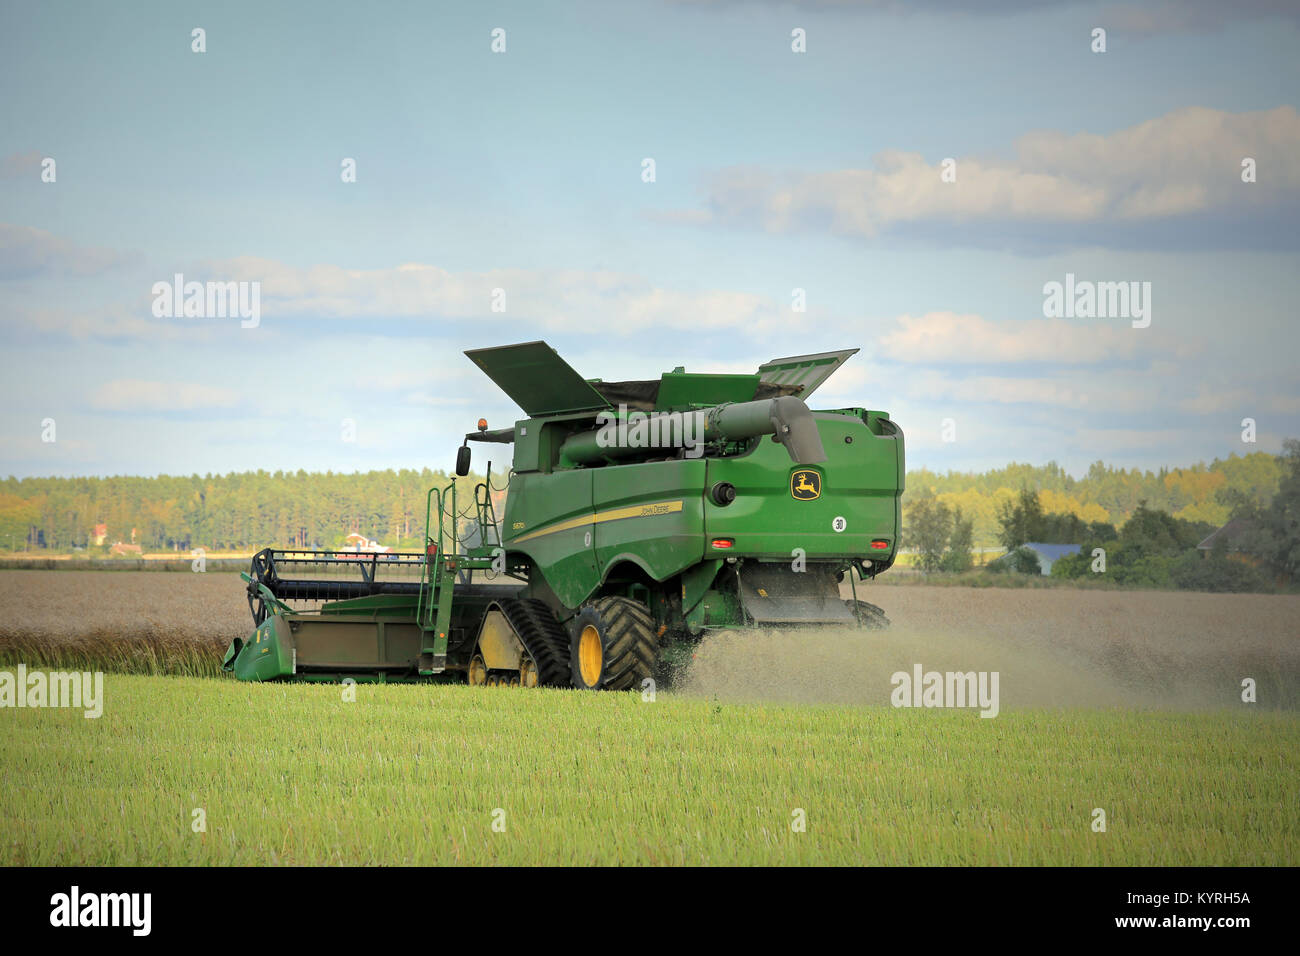 SALO, Finlandia - 6 de septiembre de 2014: John Deere s670i la cosechadora en el campo en la tarde cosechar colza. Ce estima que la cosecha de colza Europea crecer Foto de stock